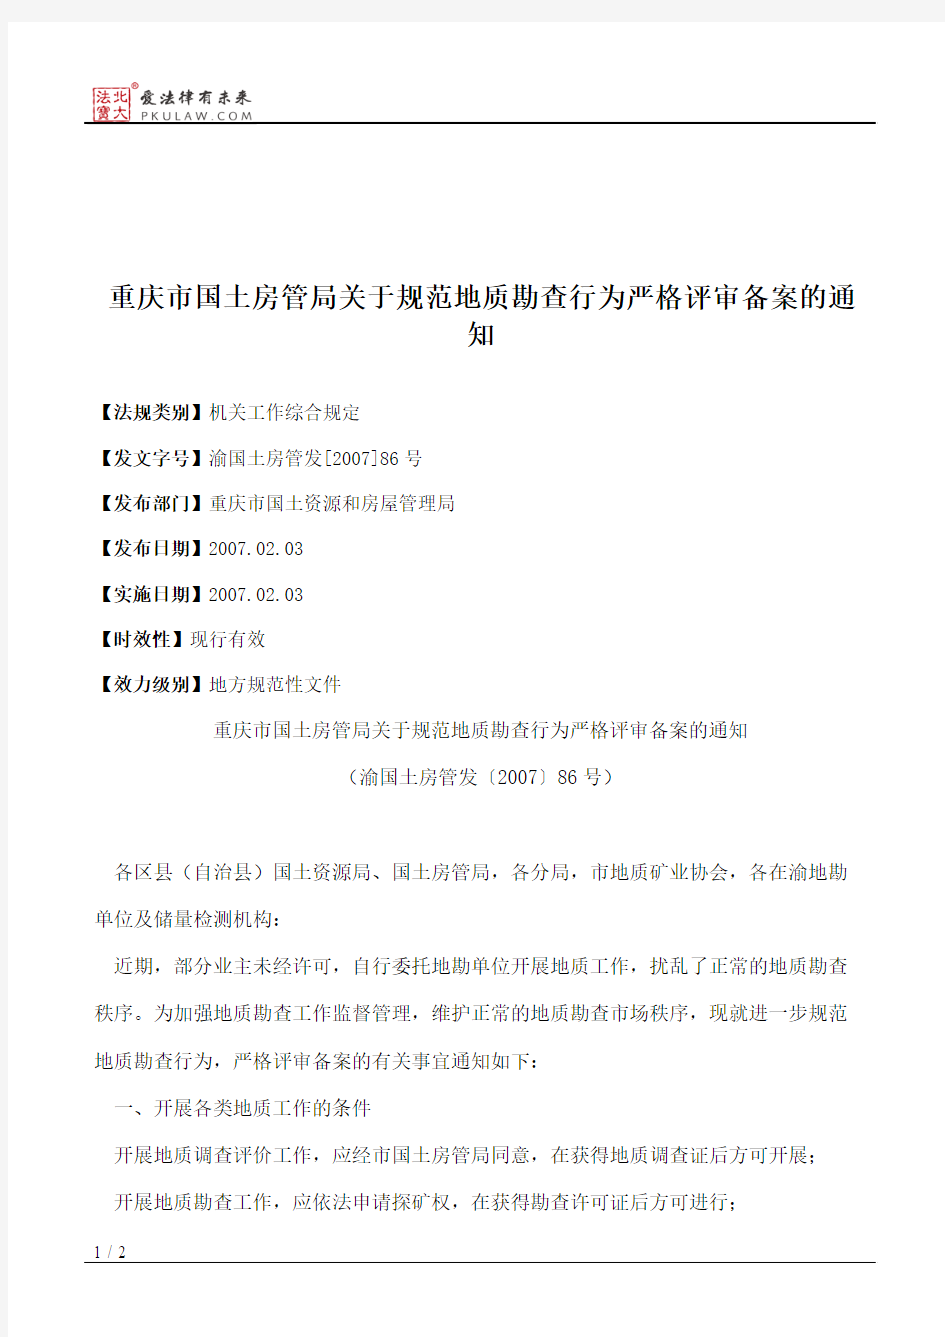 重庆市国土房管局关于规范地质勘查行为严格评审备案的通知